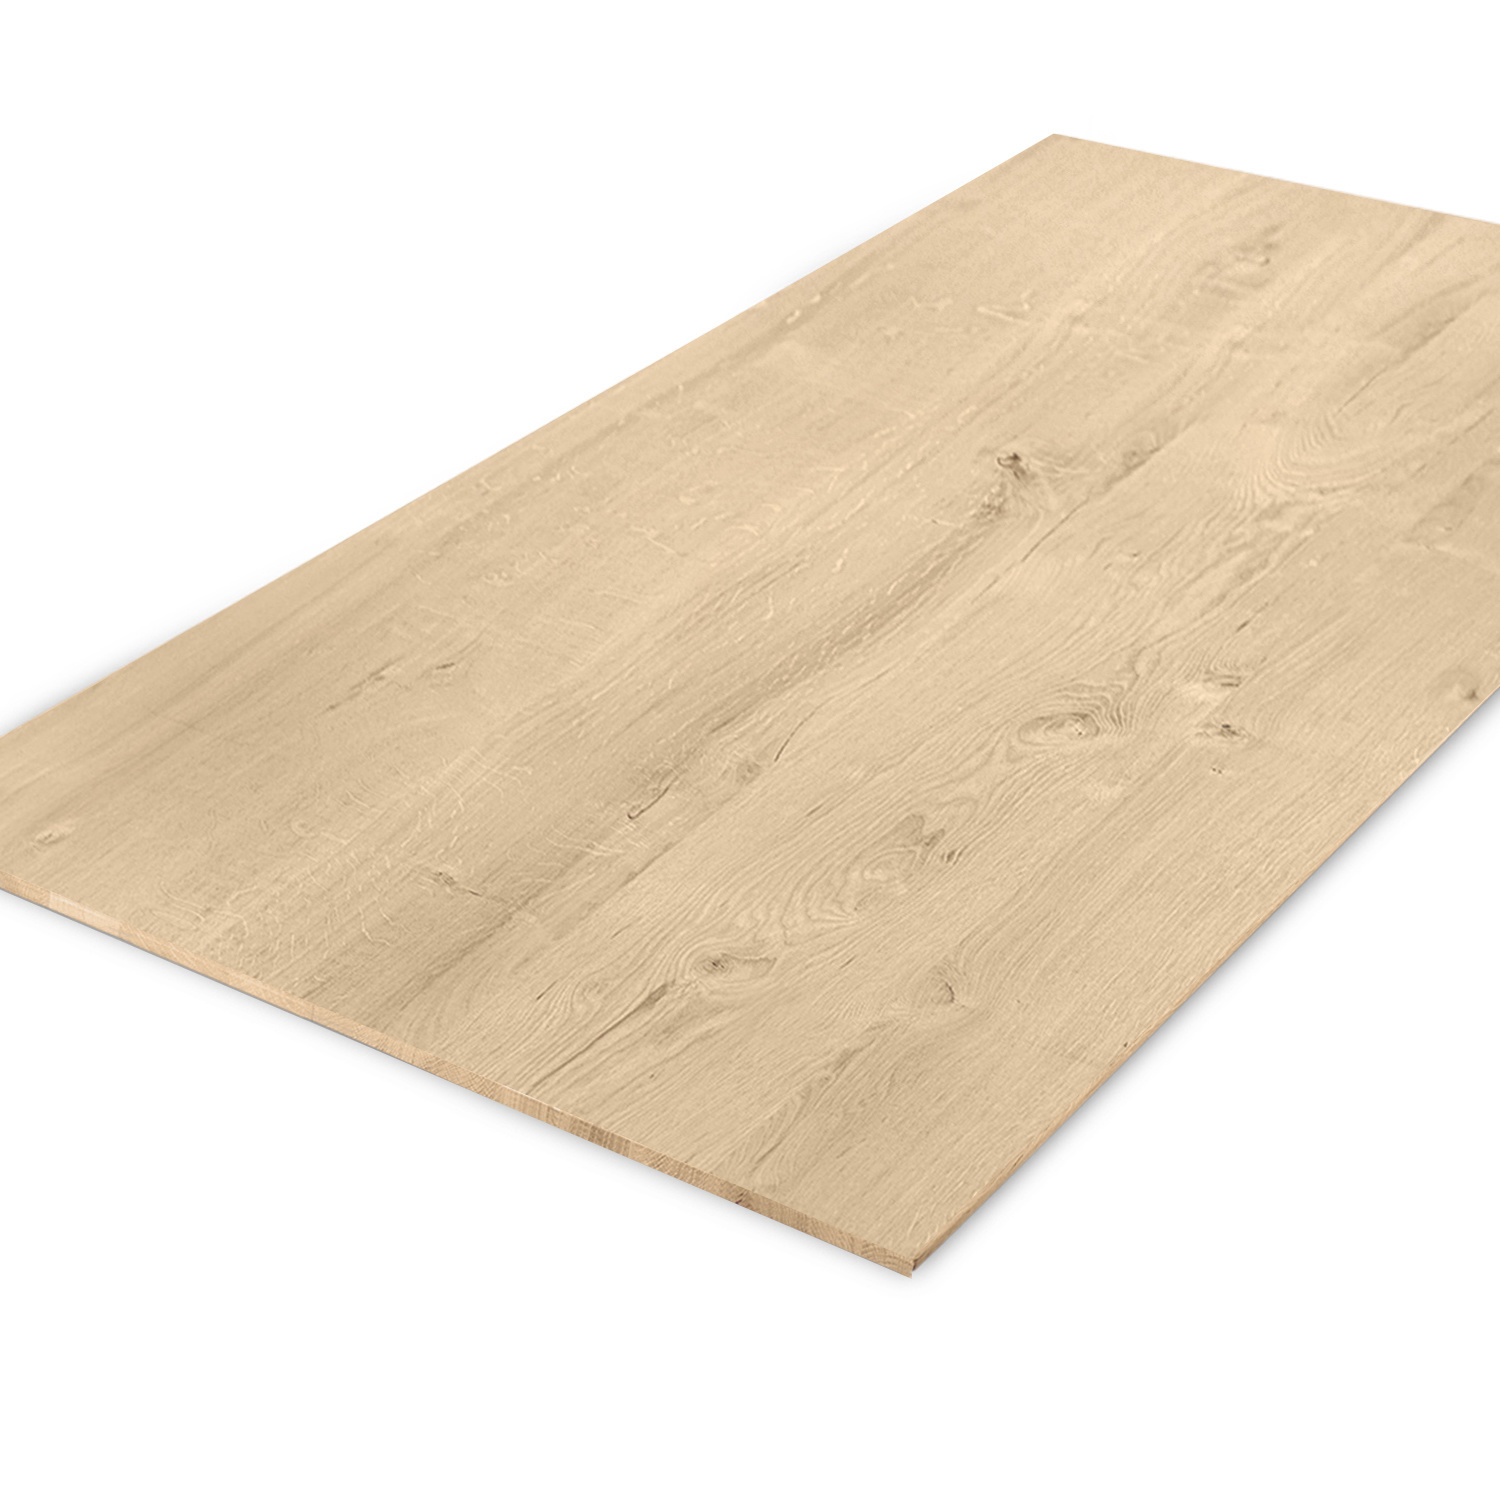  Eiken tafelblad verjongd op maat - 4 cm dik (1-laag) - rustiek Europees eikenhout - met brede lamellen (circa 10-12 cm) - verlijmd kd 8-12% - 50-120x50-248 cm